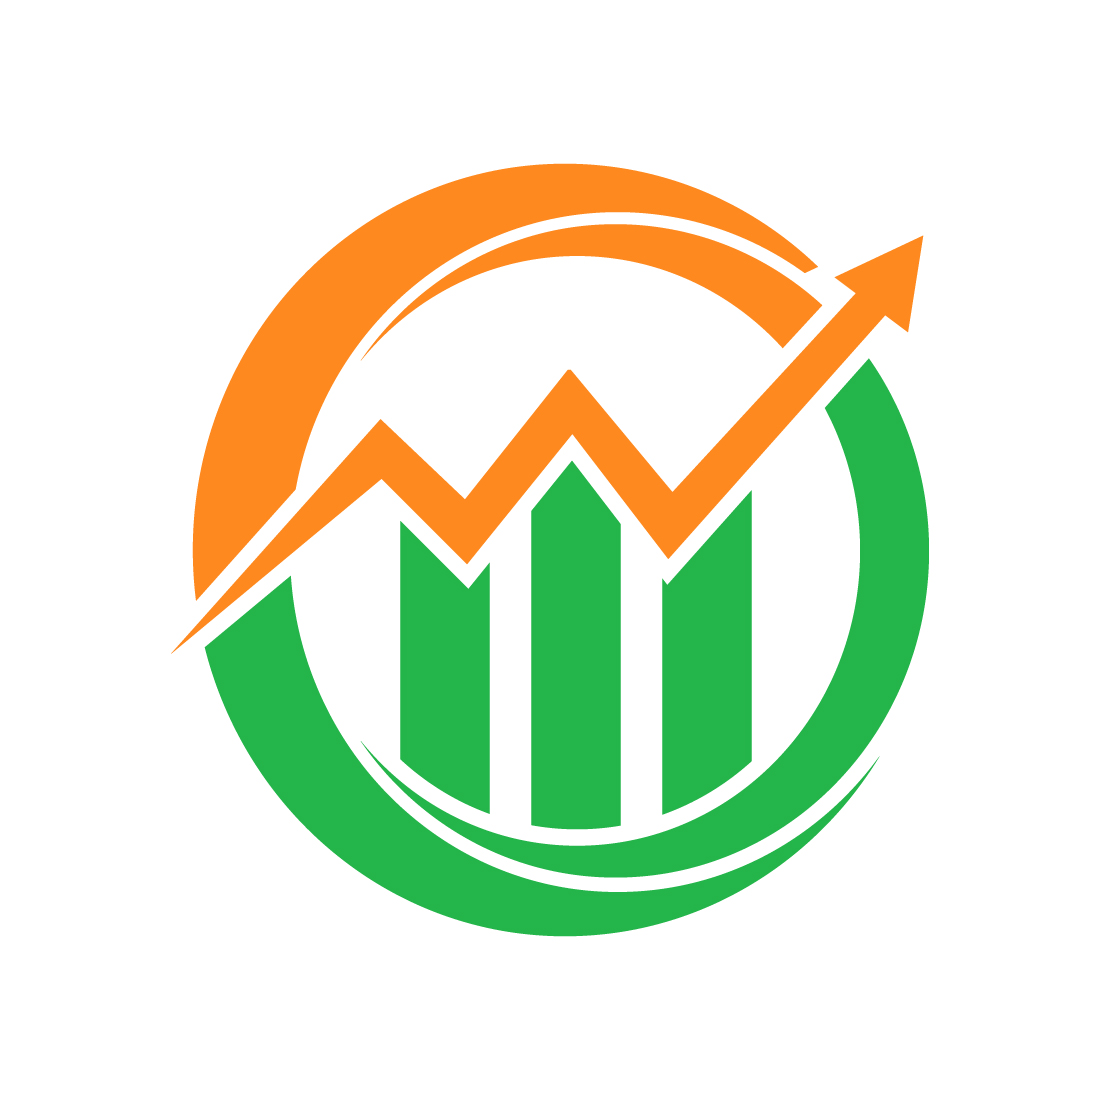 Financial logo creative arrow, Vector design concept preview image.